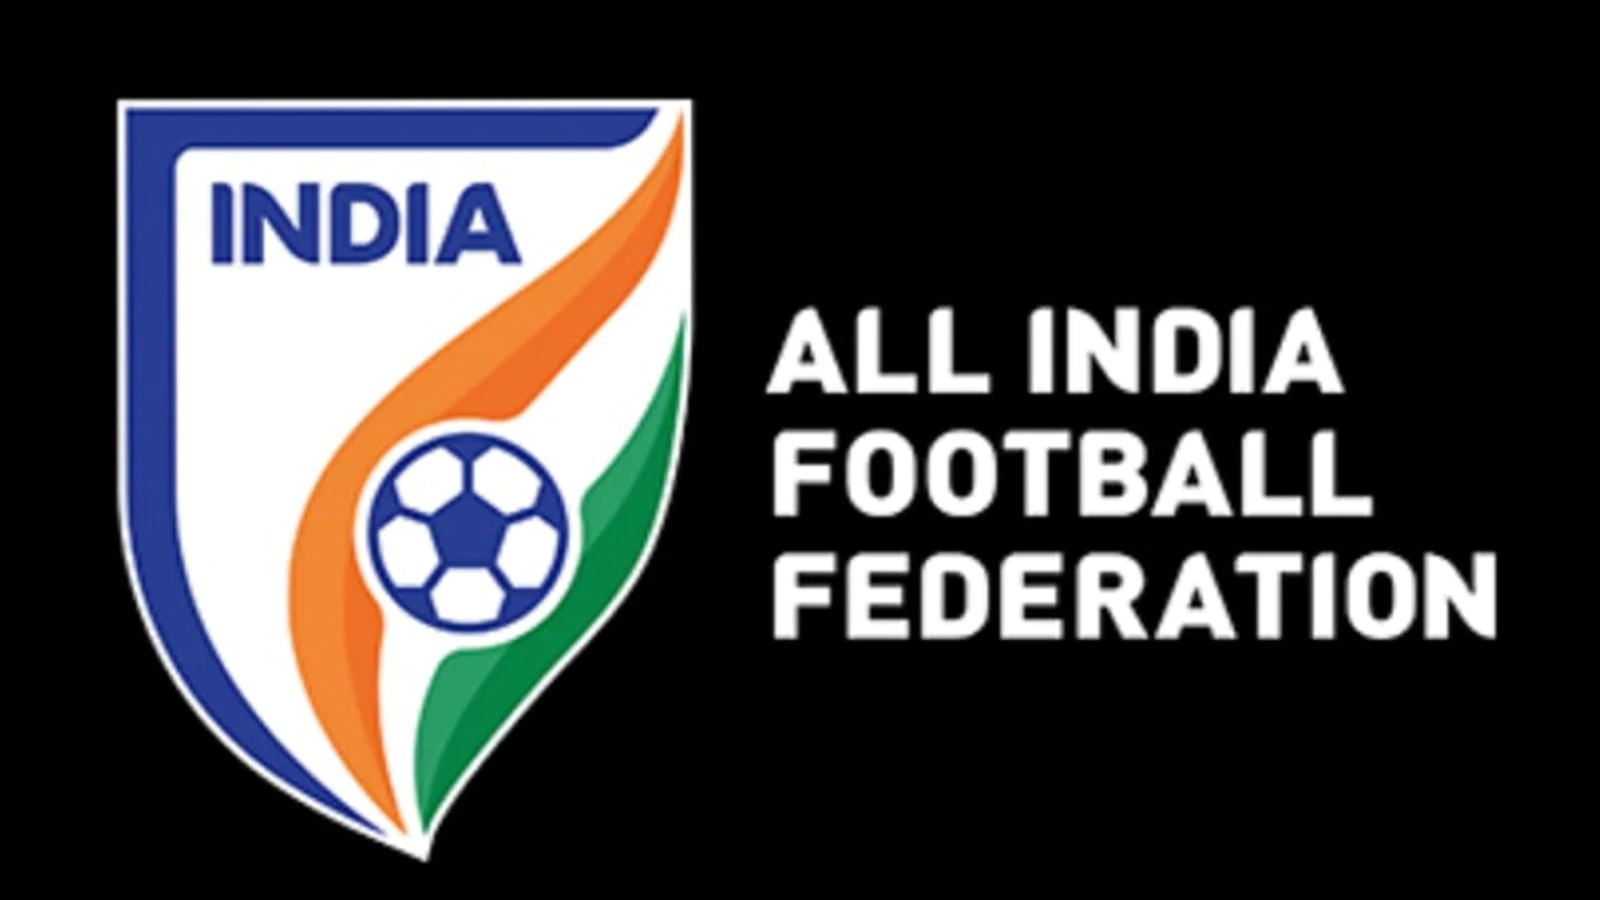 Bóng đá Ấn Độ: Bóng đá ở Ấn Độ giờ đây sẽ được thiết lập bốn hạng, AIFF cũng đã nhận được 5 hồ sơ dự thầu từ các đội để tham dự trực tiếp I-League